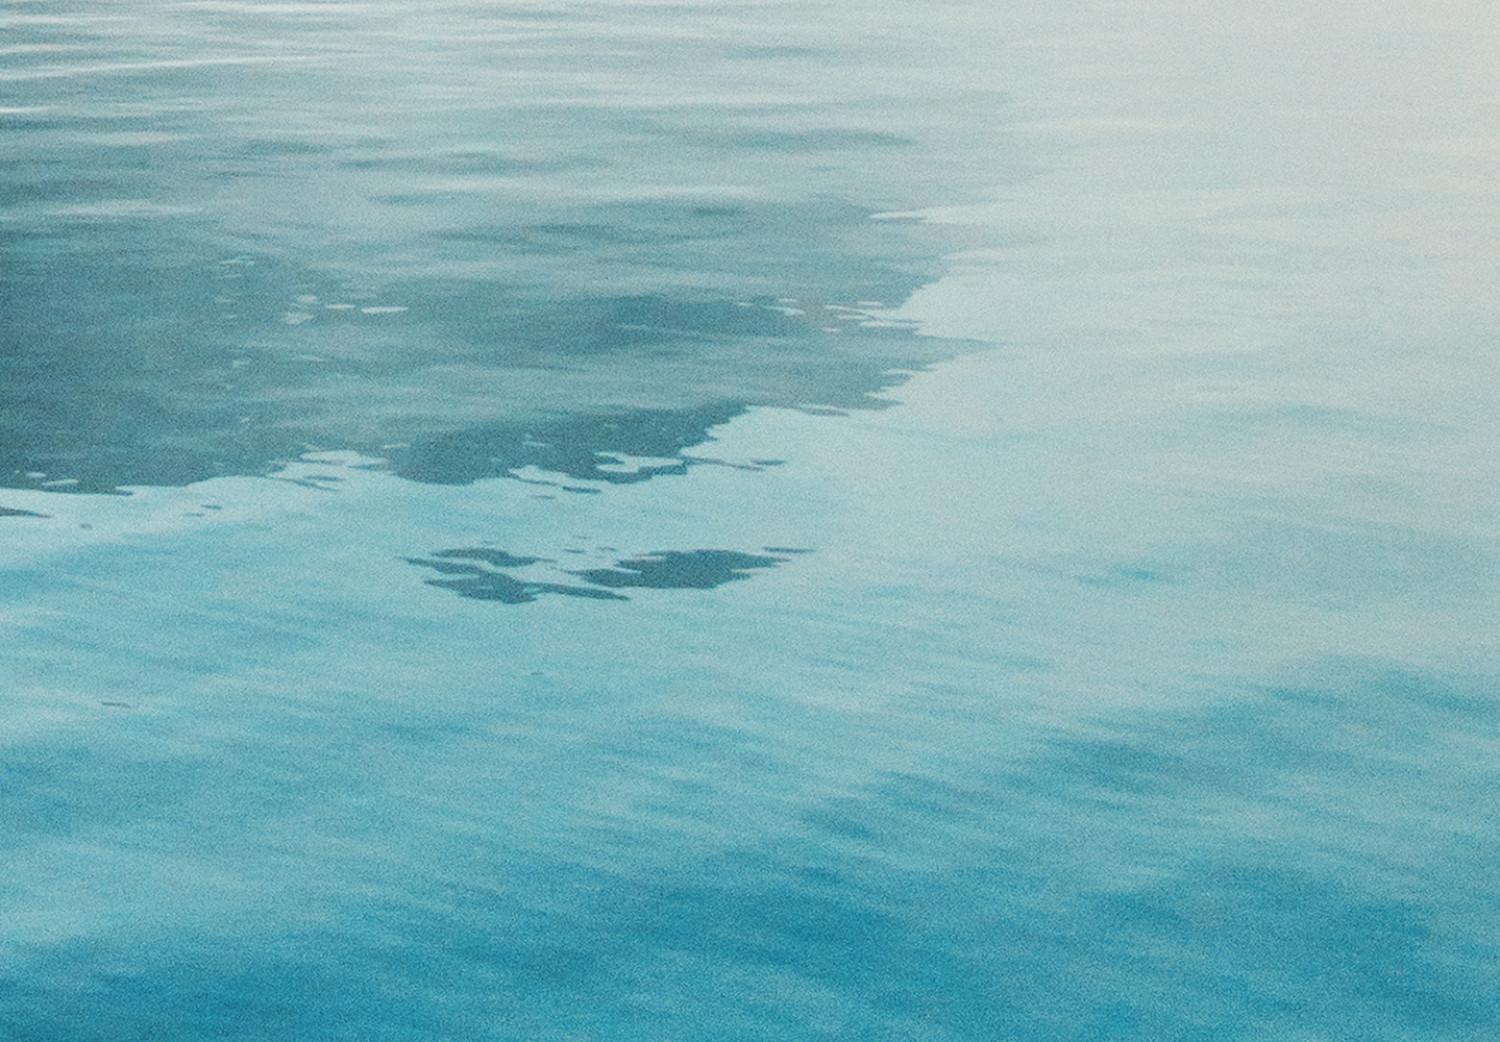 Cartel Bahía brumosa - composición de agua azul y niebla clara sobre la roca